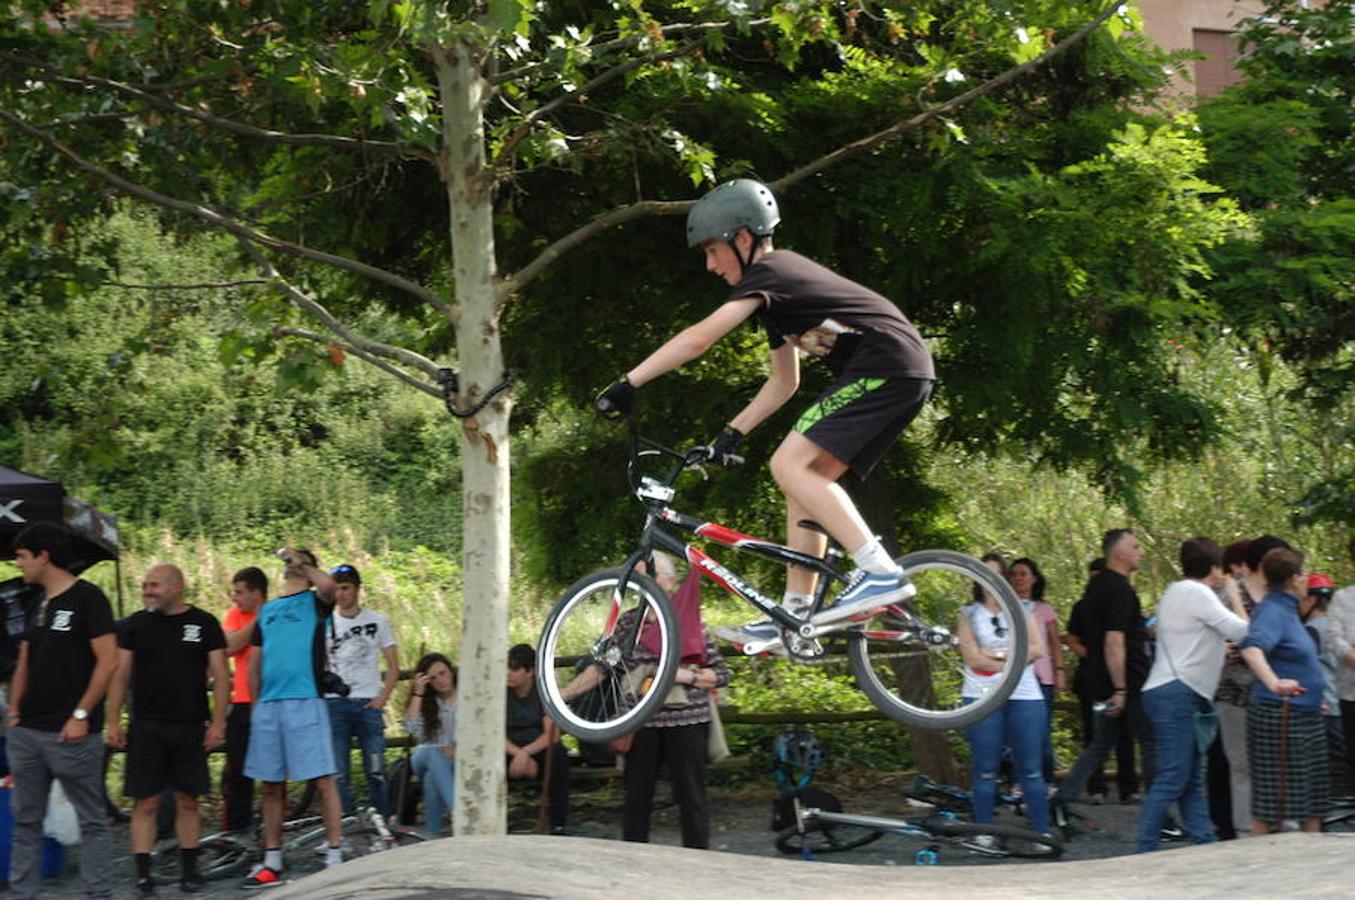 El pasado sábado se inauguró en Igea un circuito pump track para bicicletas con las que realizar saltos y piruetas. El medallista olímpico Carlos Coloma inauguró las instalaciones denominadas Dyno Pumptrack Igea junto al parque del río Linares. 